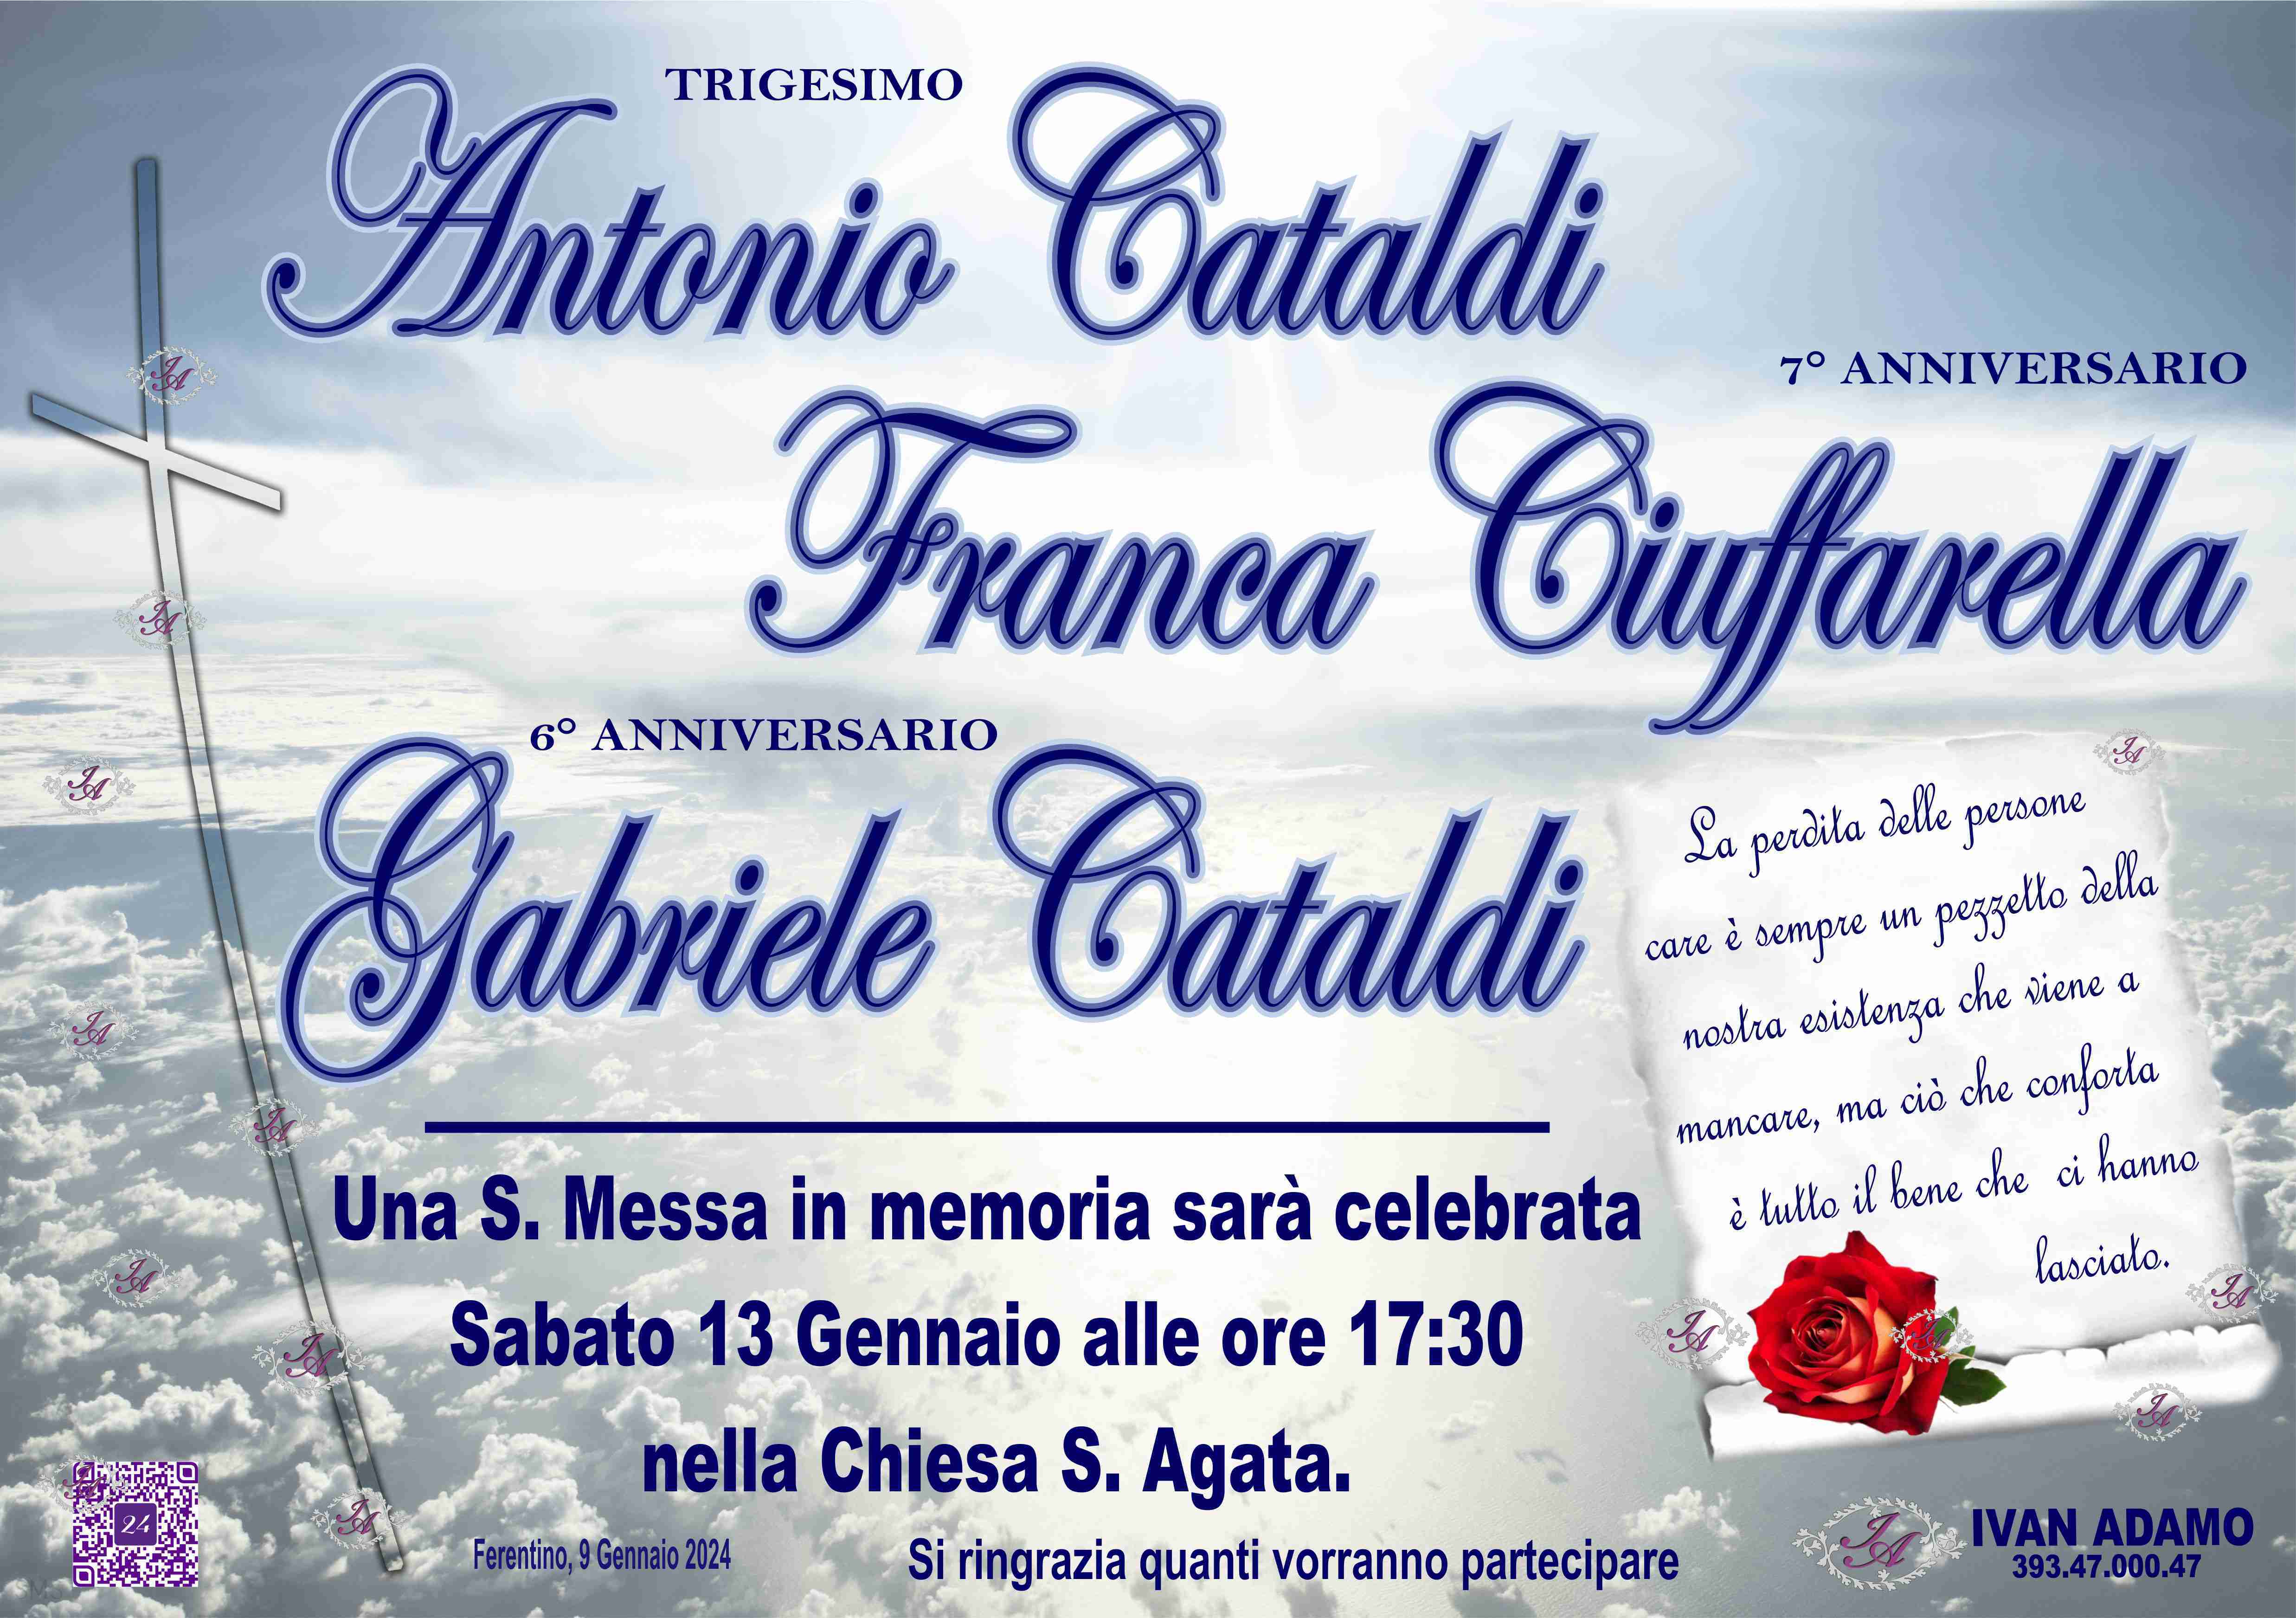 Antonio Cataldi - Franca Ciuffarella - Gabriele Cataldi